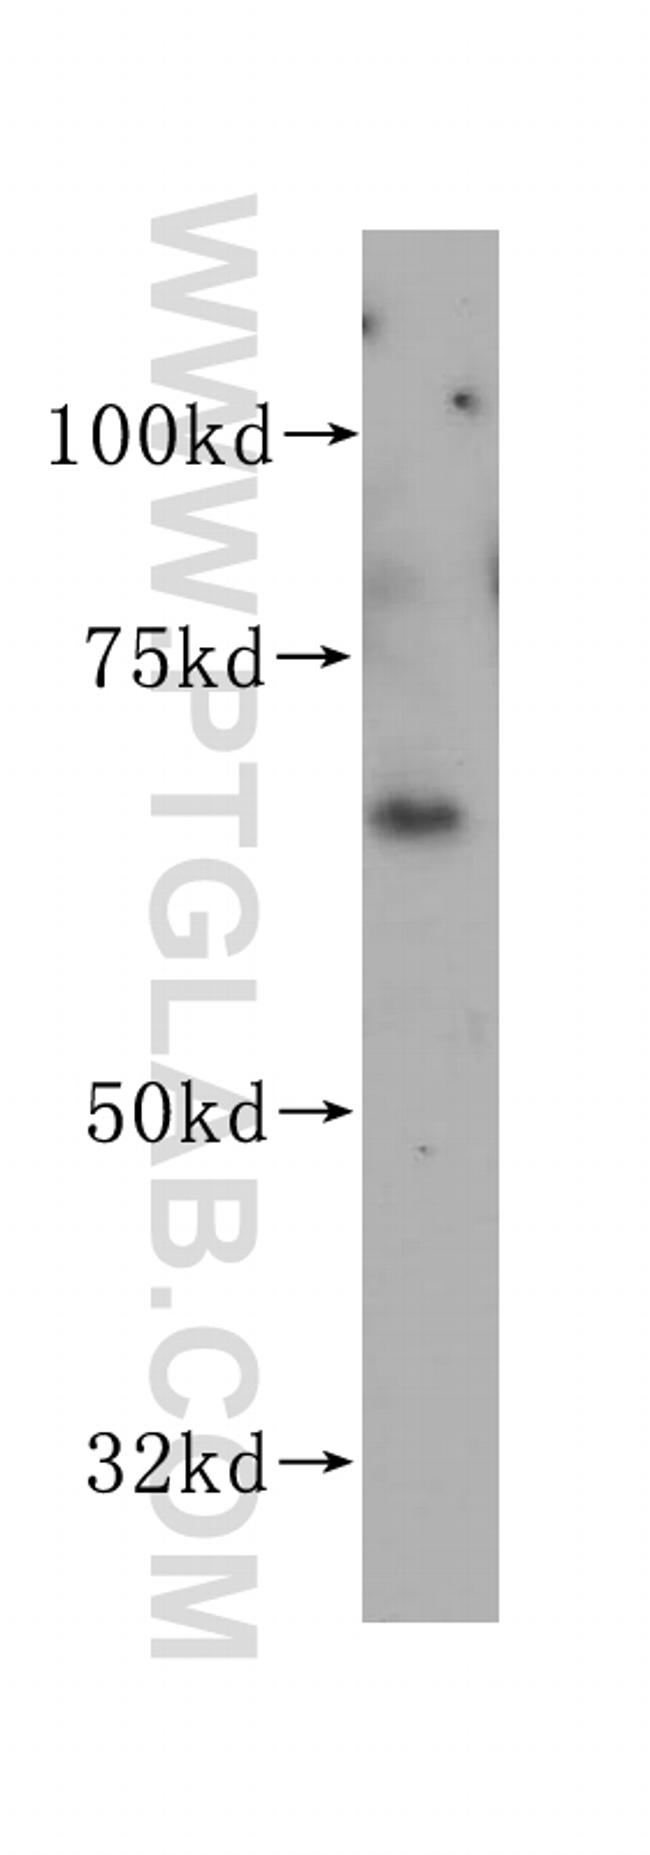 VANGL1 Antibody in Western Blot (WB)